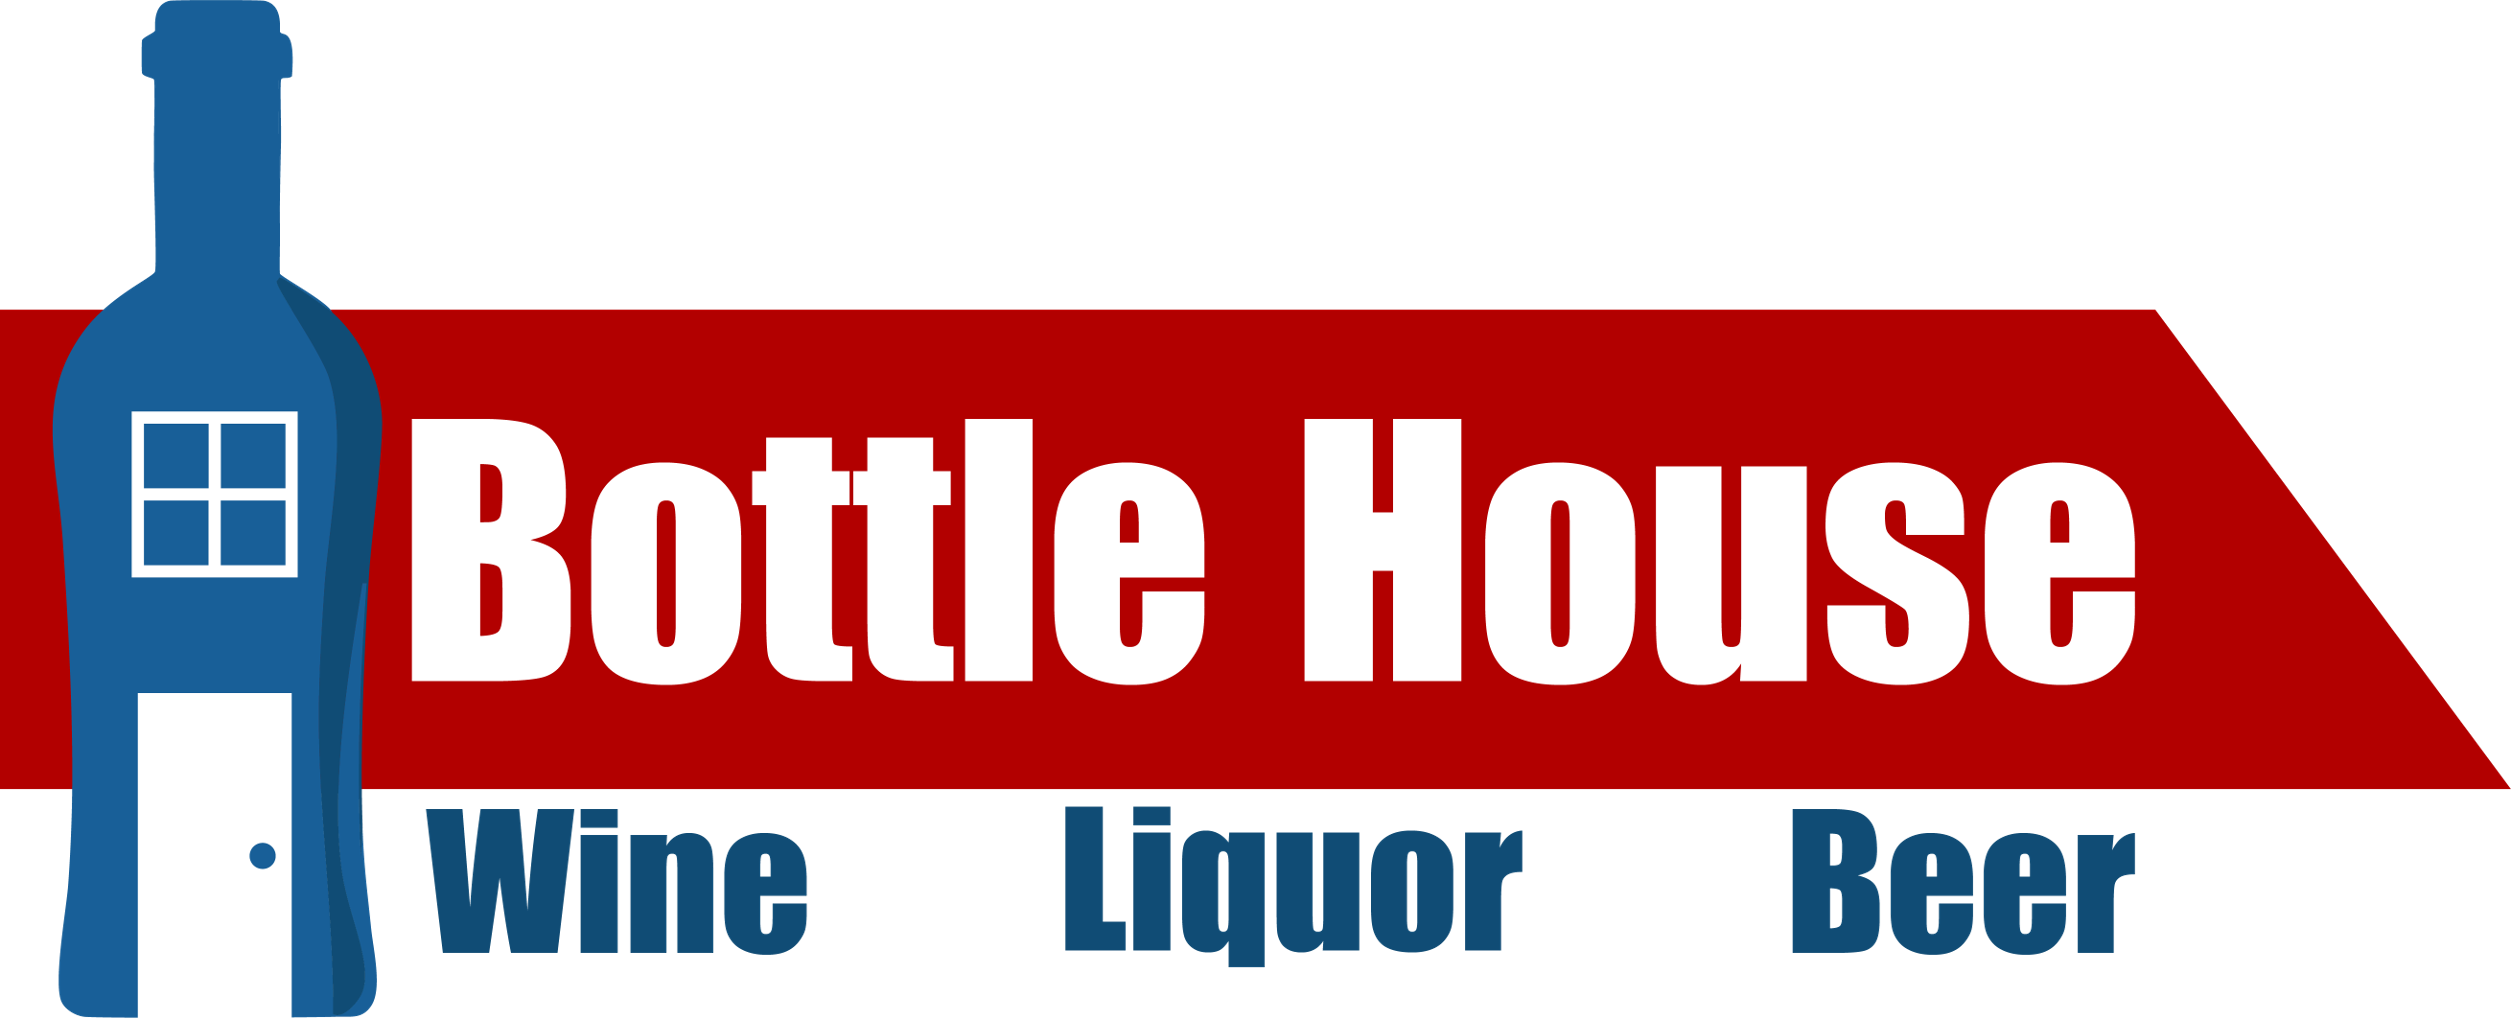 Bottle house